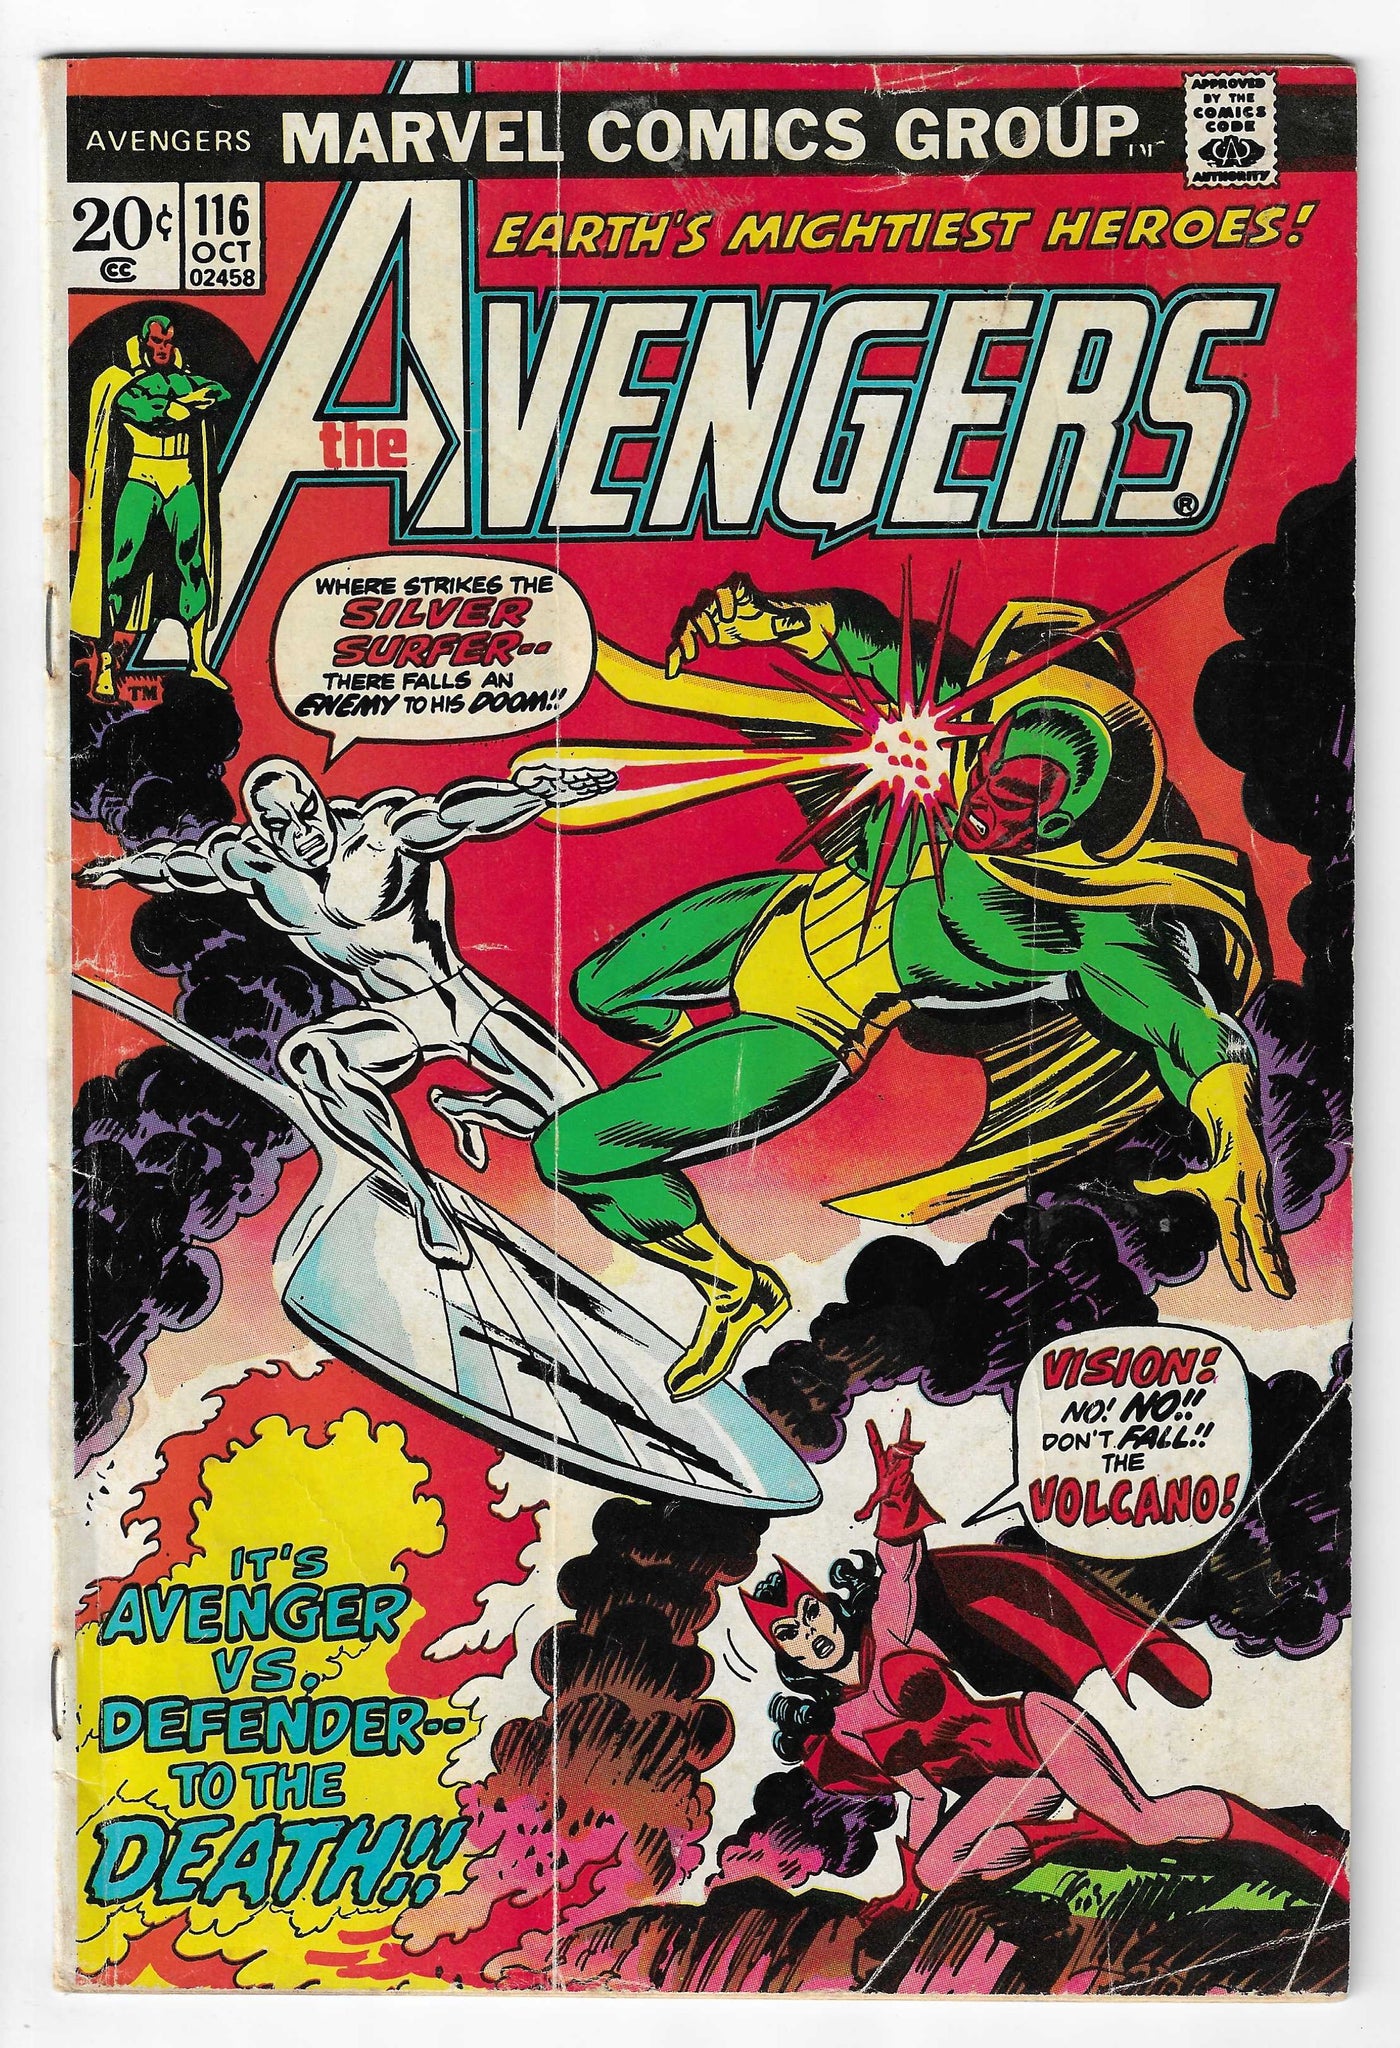 Avengers (Volume 1) #116